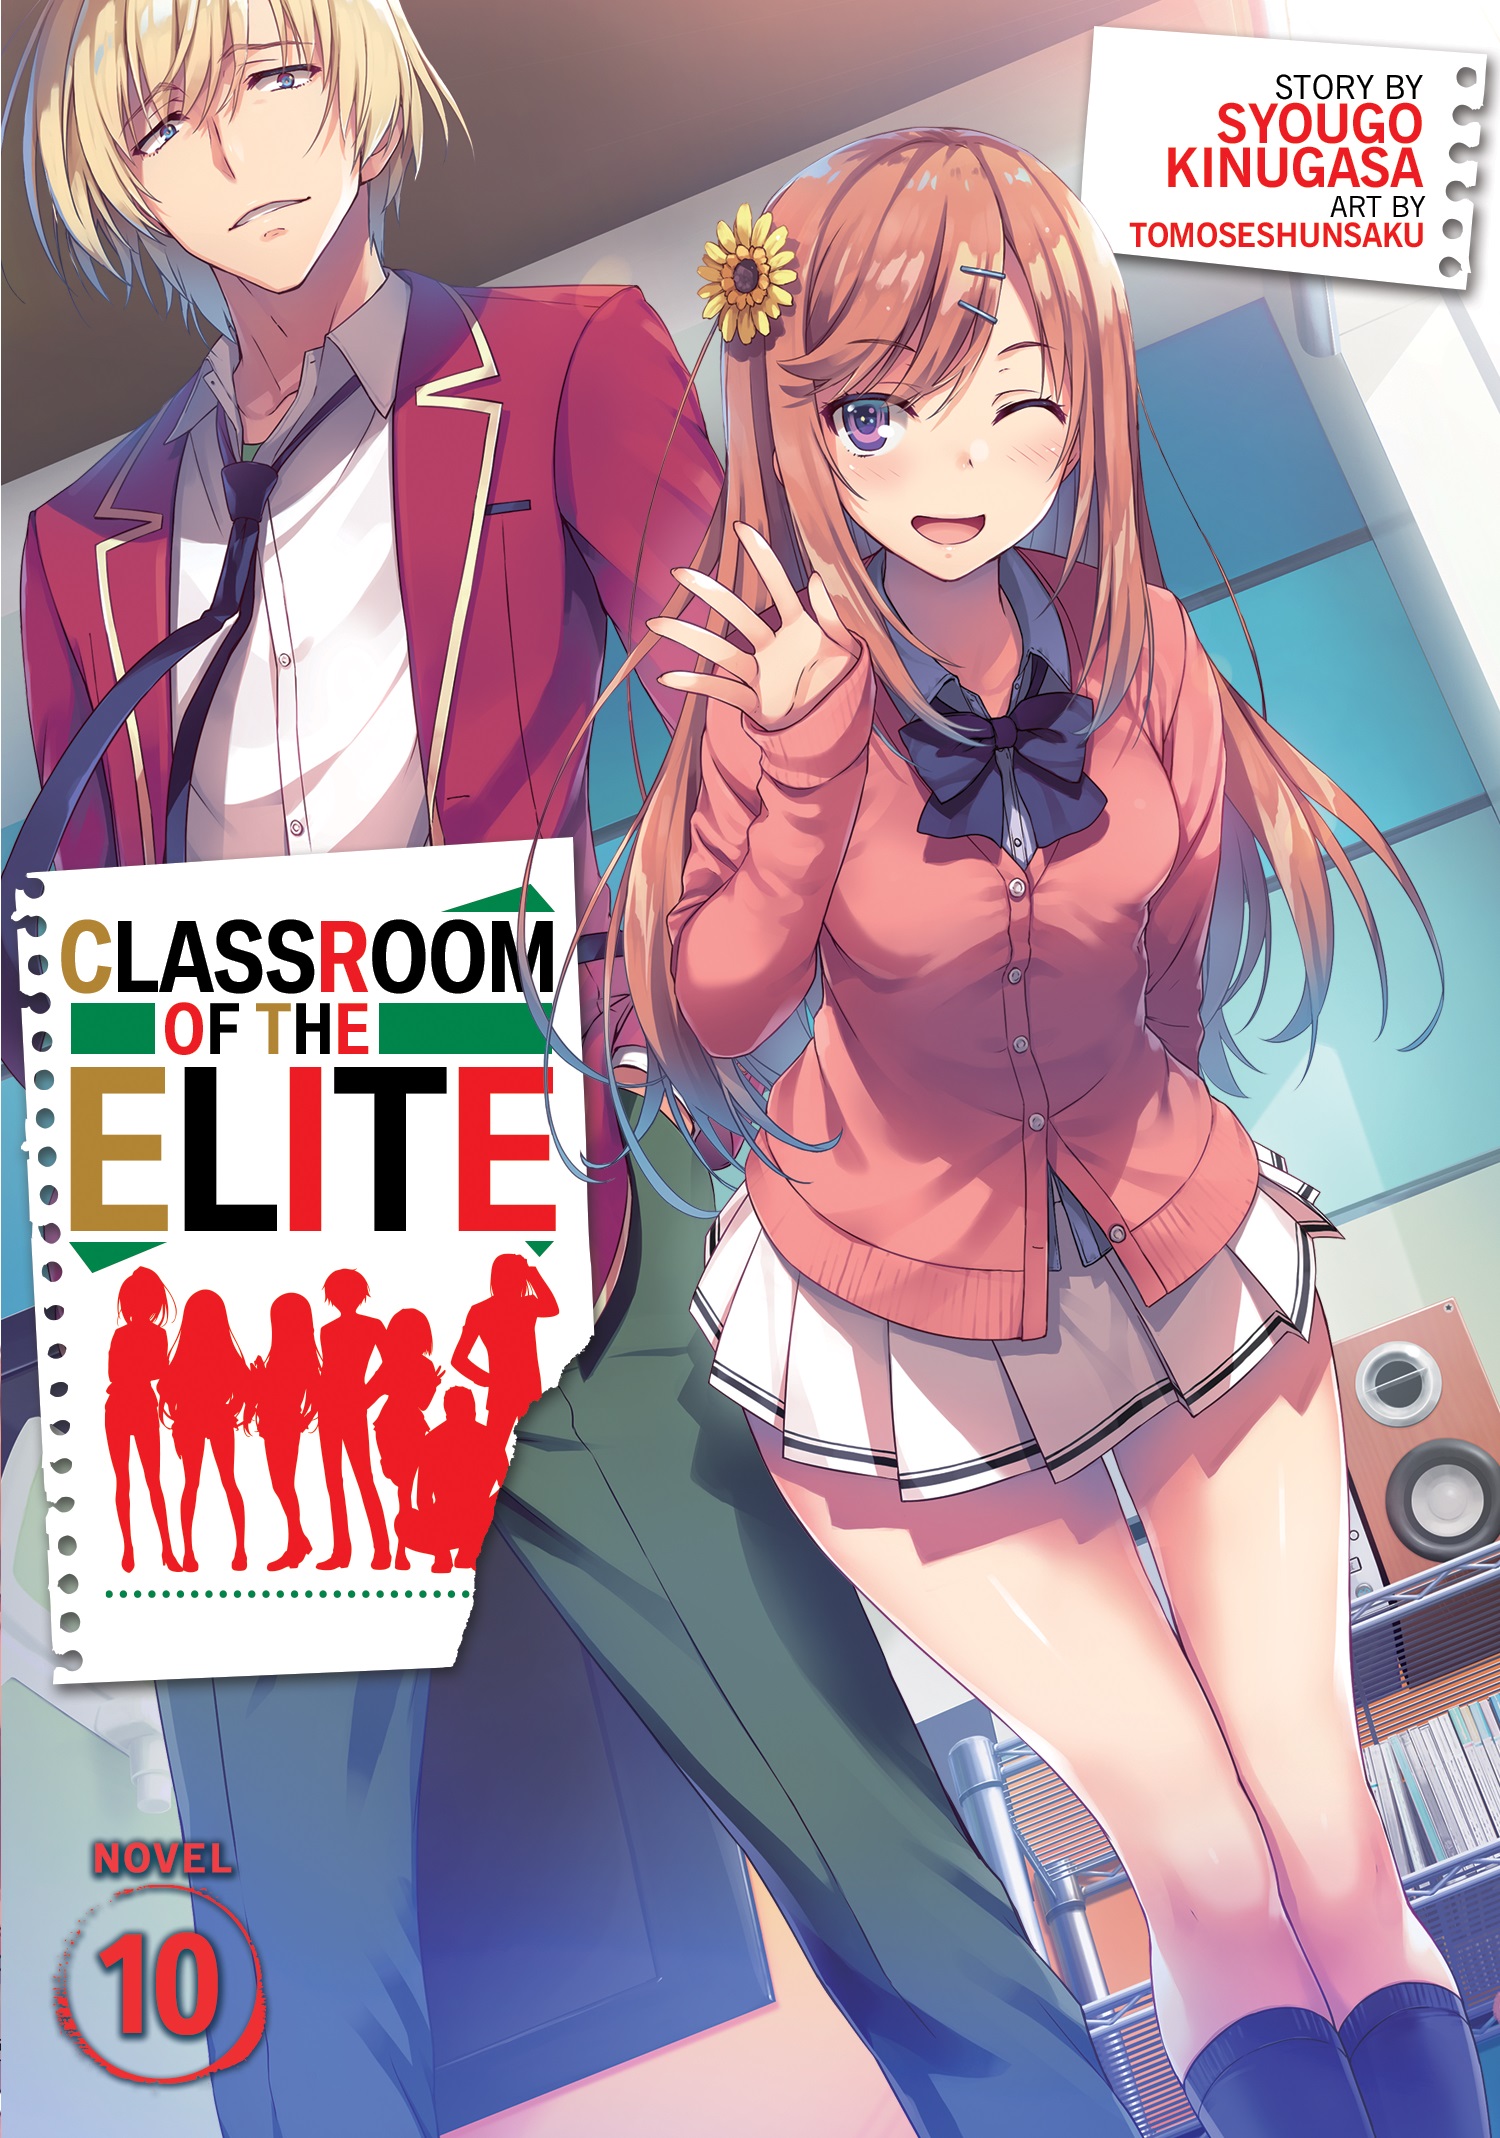 Classroom of the Elite - Classroom of the Elite Brasil